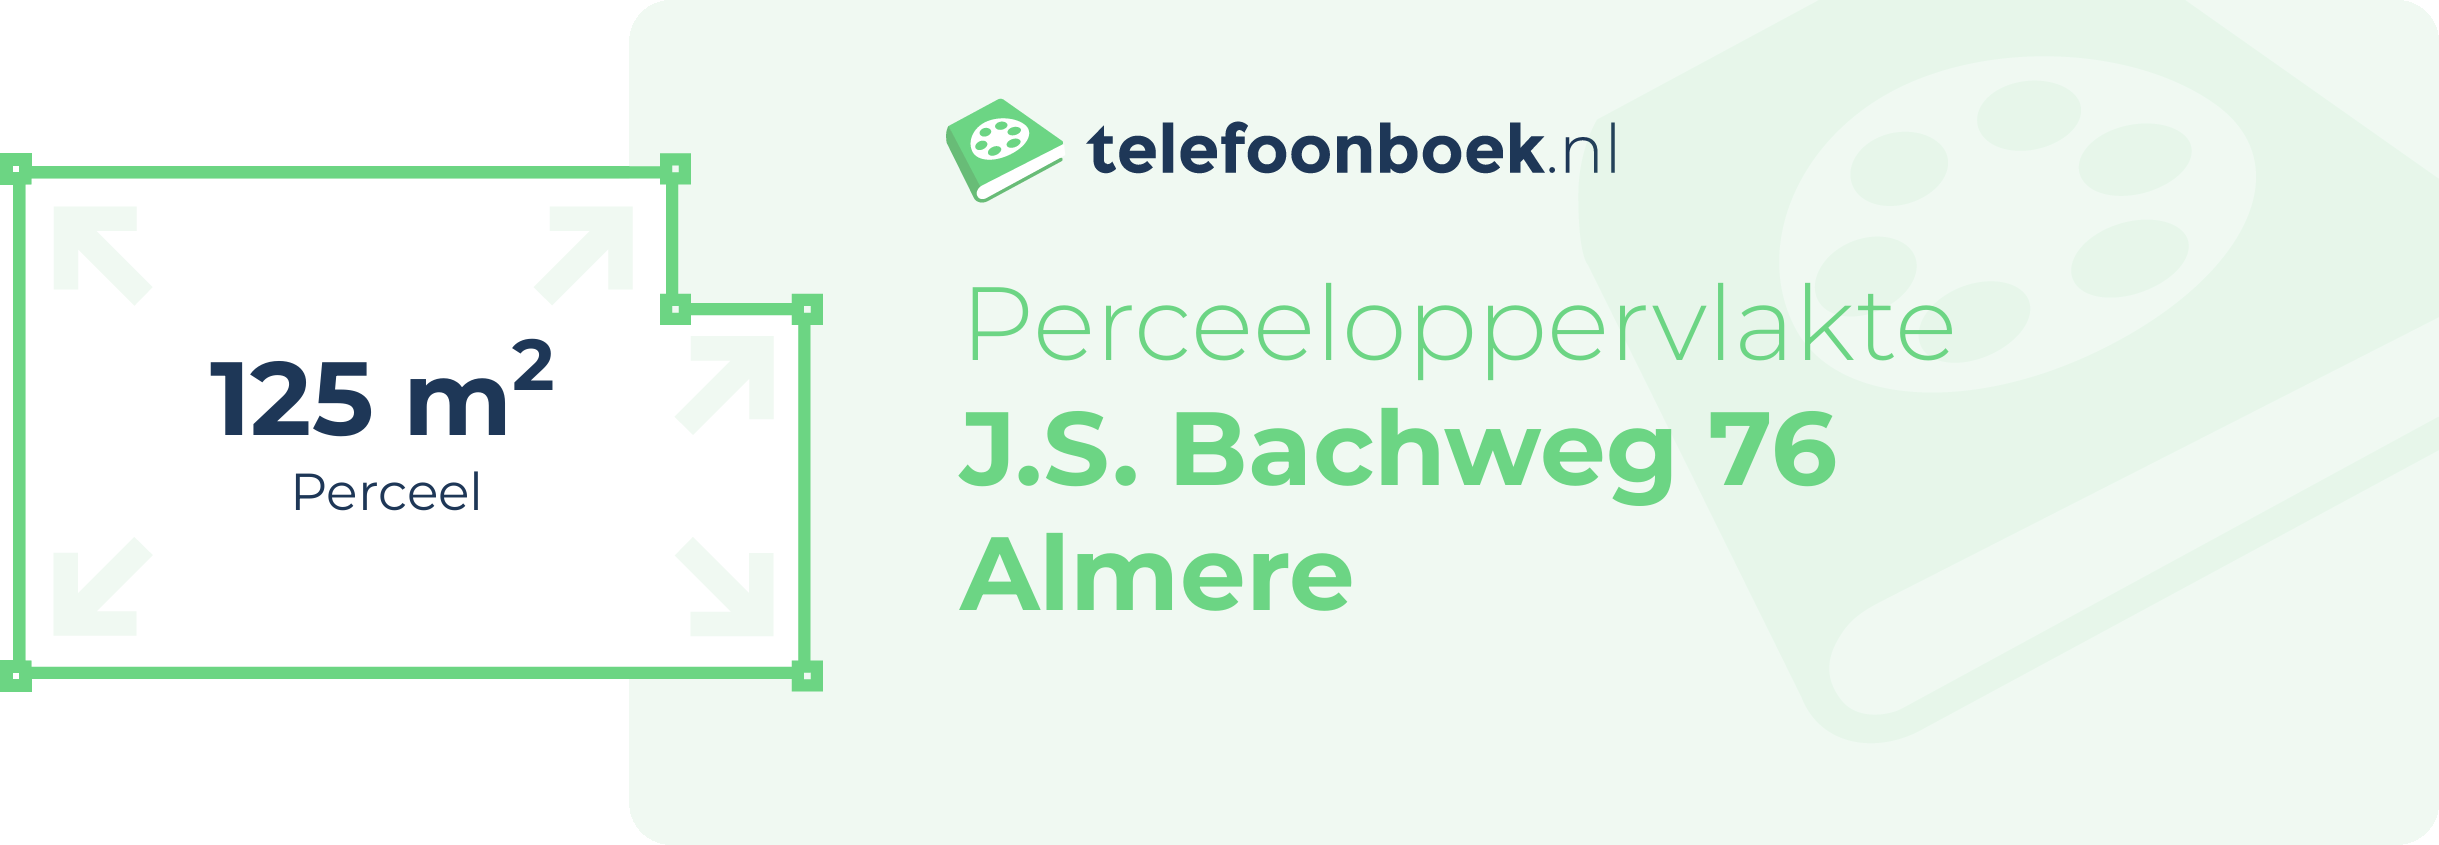 Perceeloppervlakte J.S. Bachweg 76 Almere